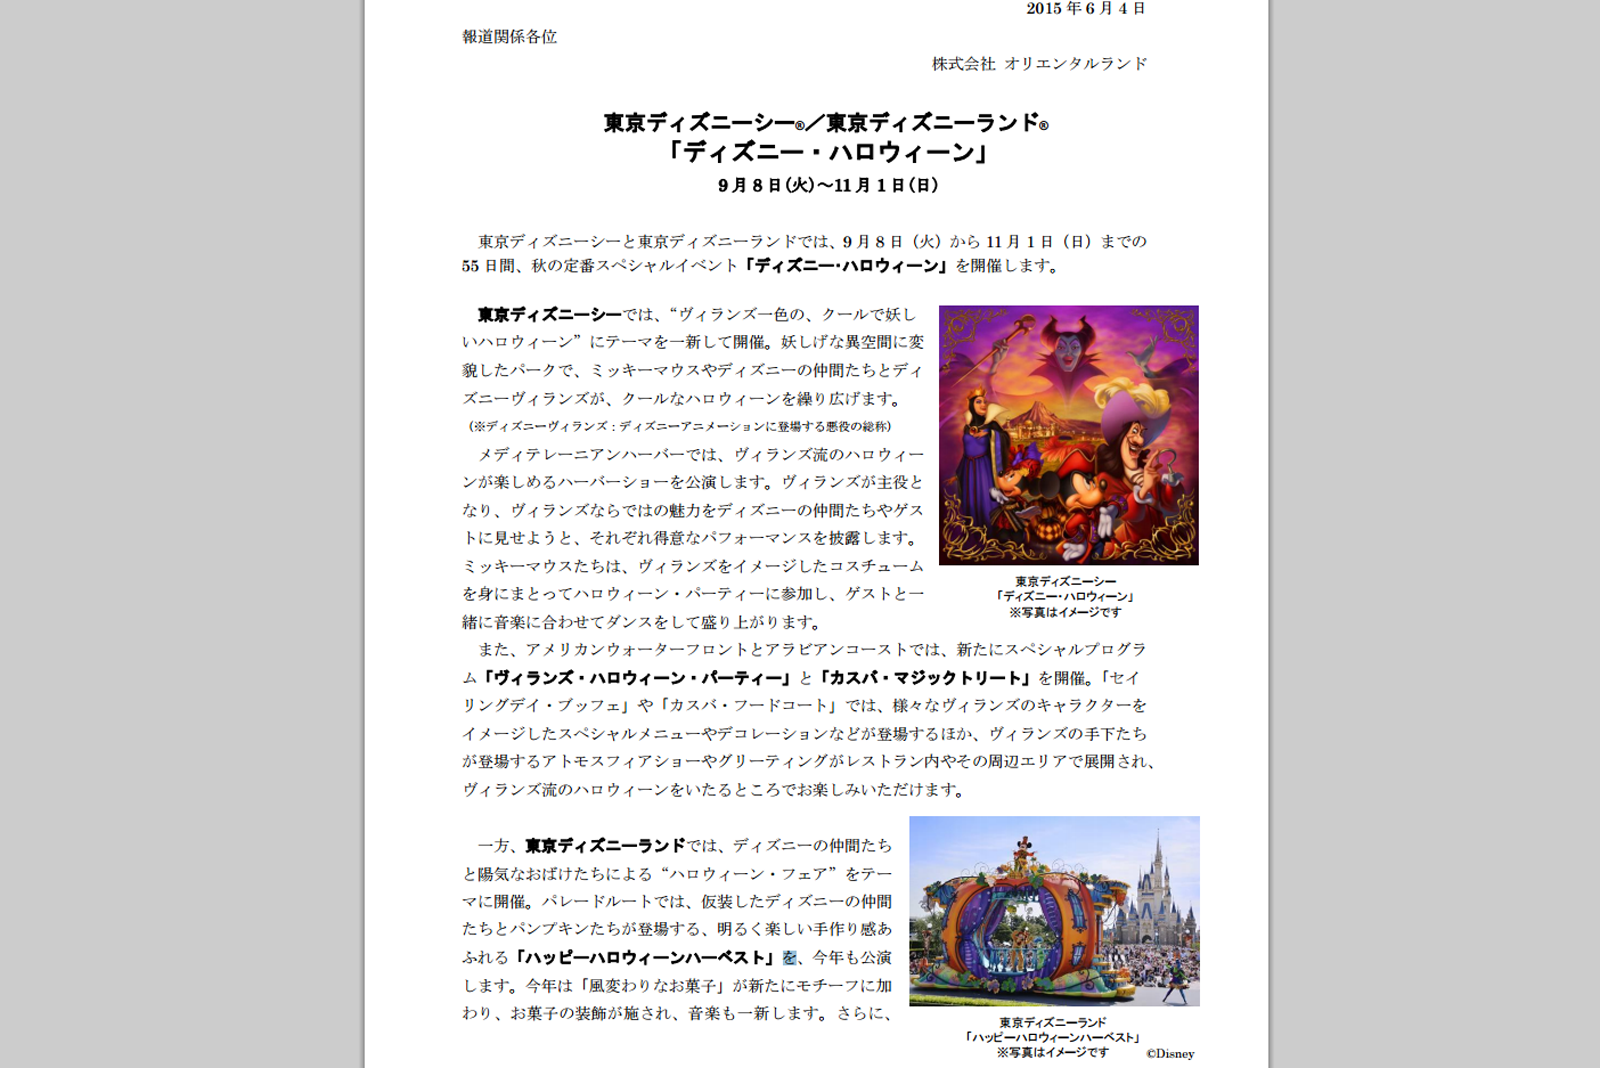 パレード音楽が一新 衣装変更 フロート順変更 東京ディズニーランド ディズニー ハロウィーン15 詳細発表 Disney Colors Blog